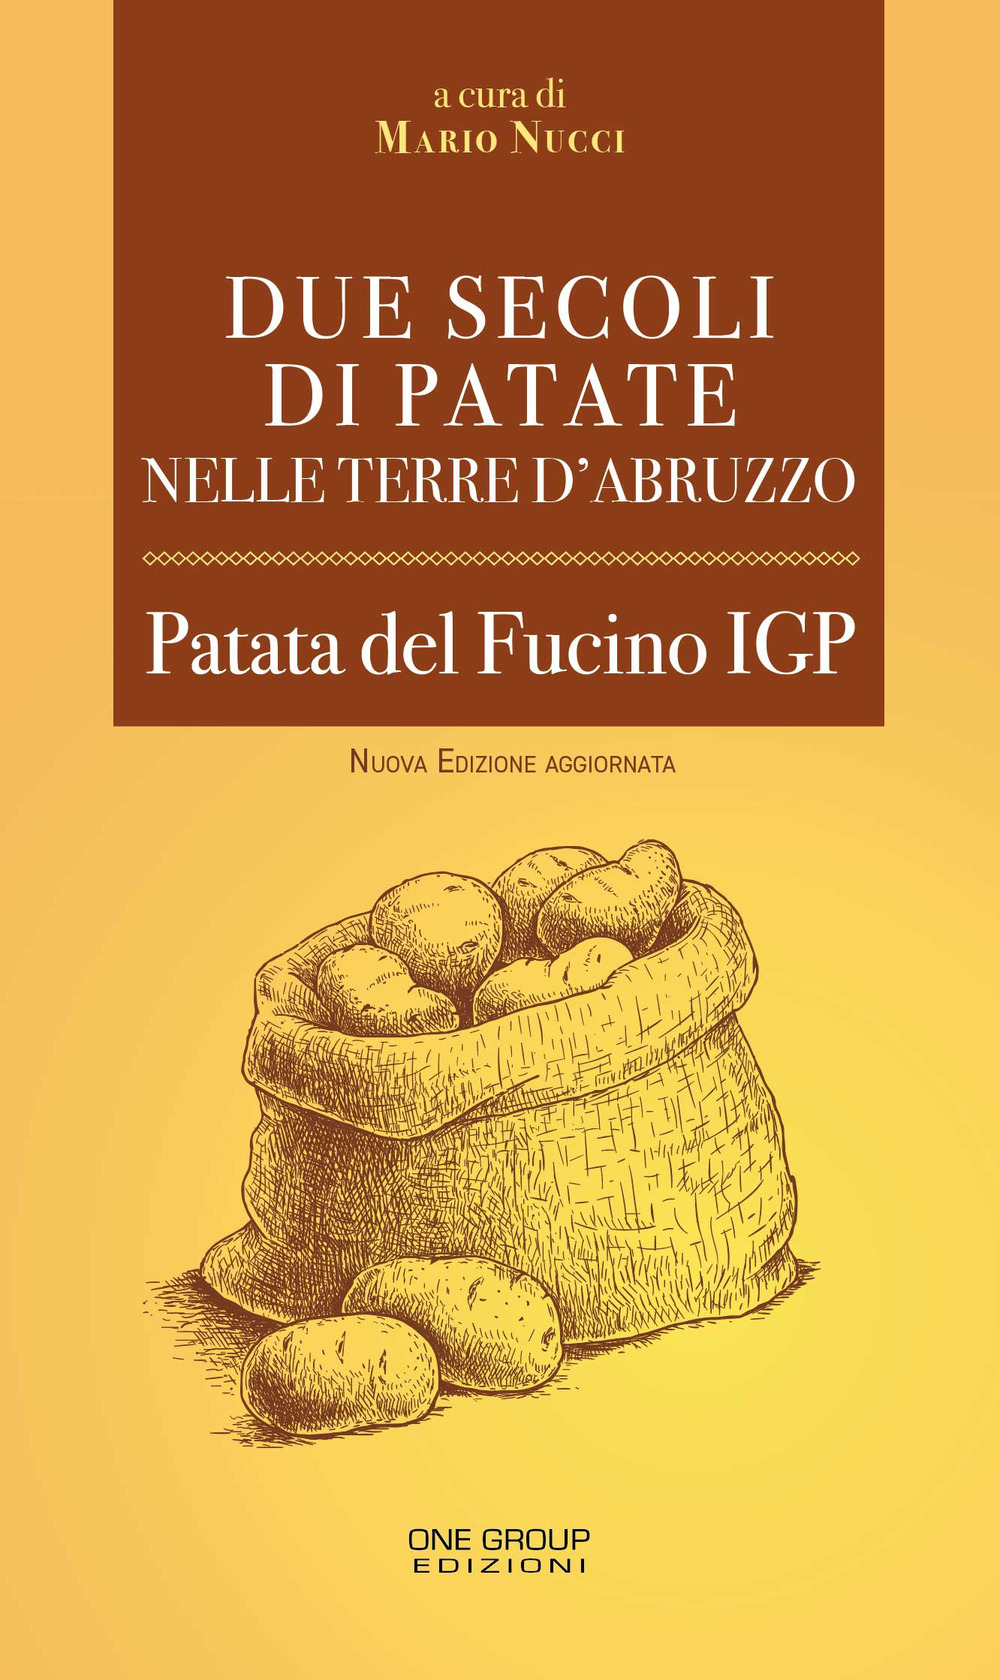 Due secoli di patate nelle terre d'Abruzzo. Patata del Fucino IGP